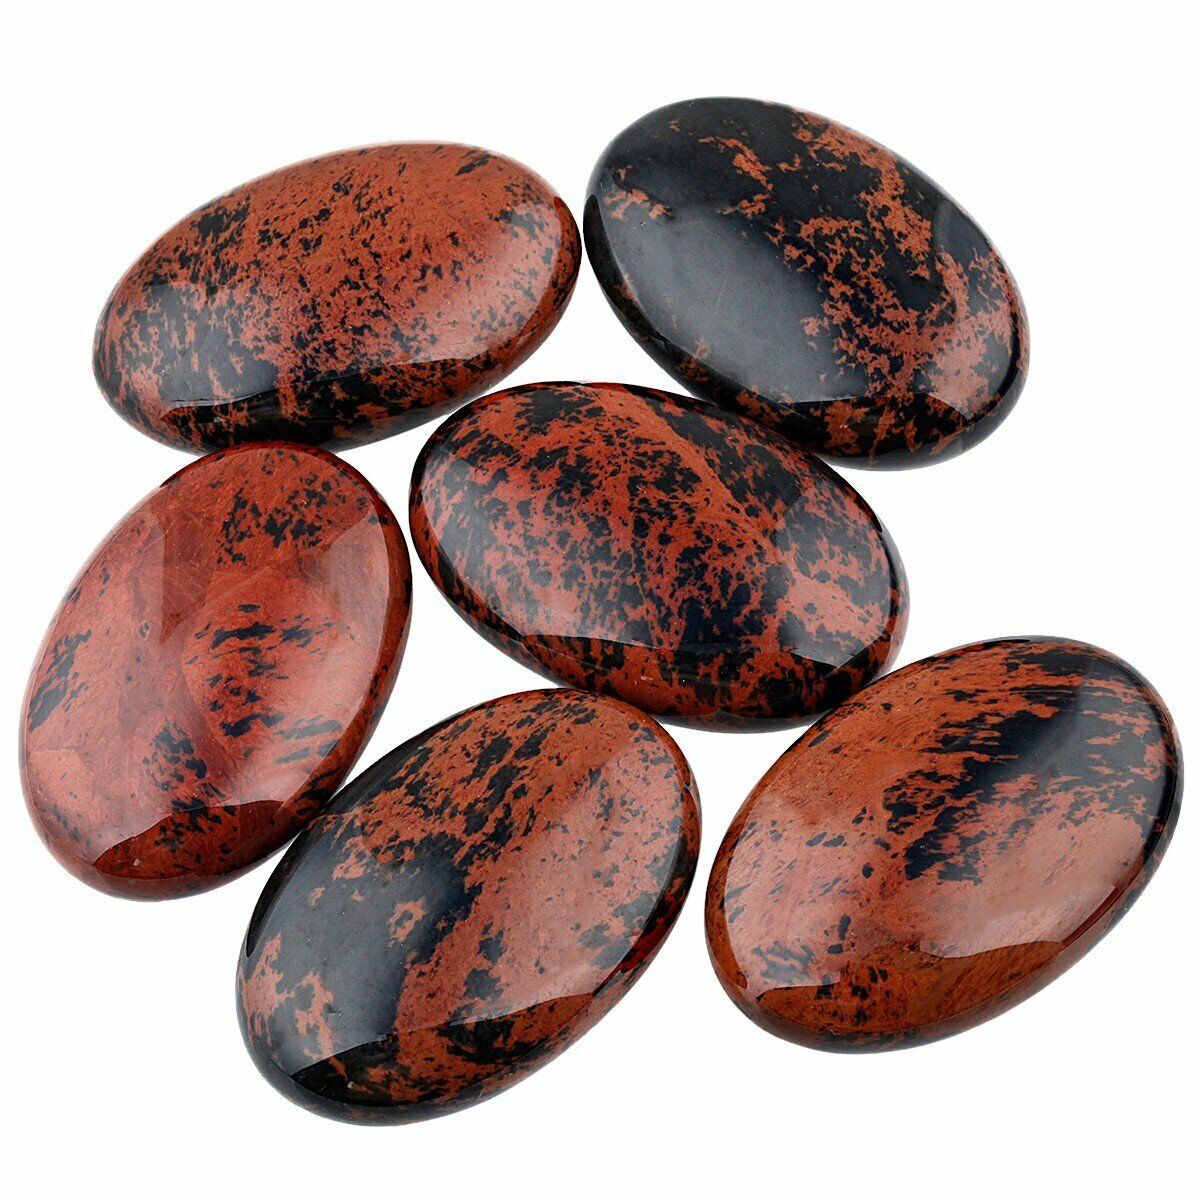 Mahogany Obsidian Palm Thumb Worry Stone 30-40 mm